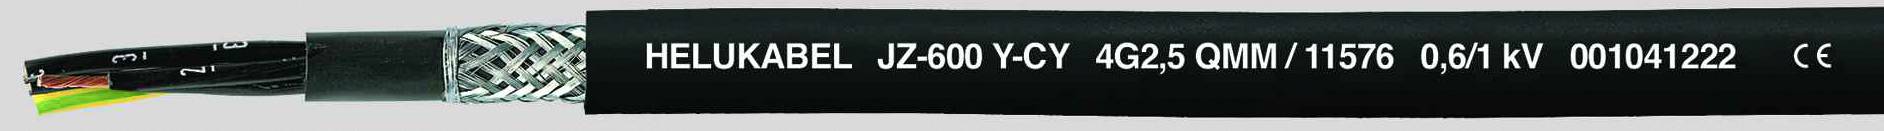 HELUKABEL JZ-600-Y-CY Steuerleitung 5 G 1.50 mm² Schwarz 11549-500 500 m